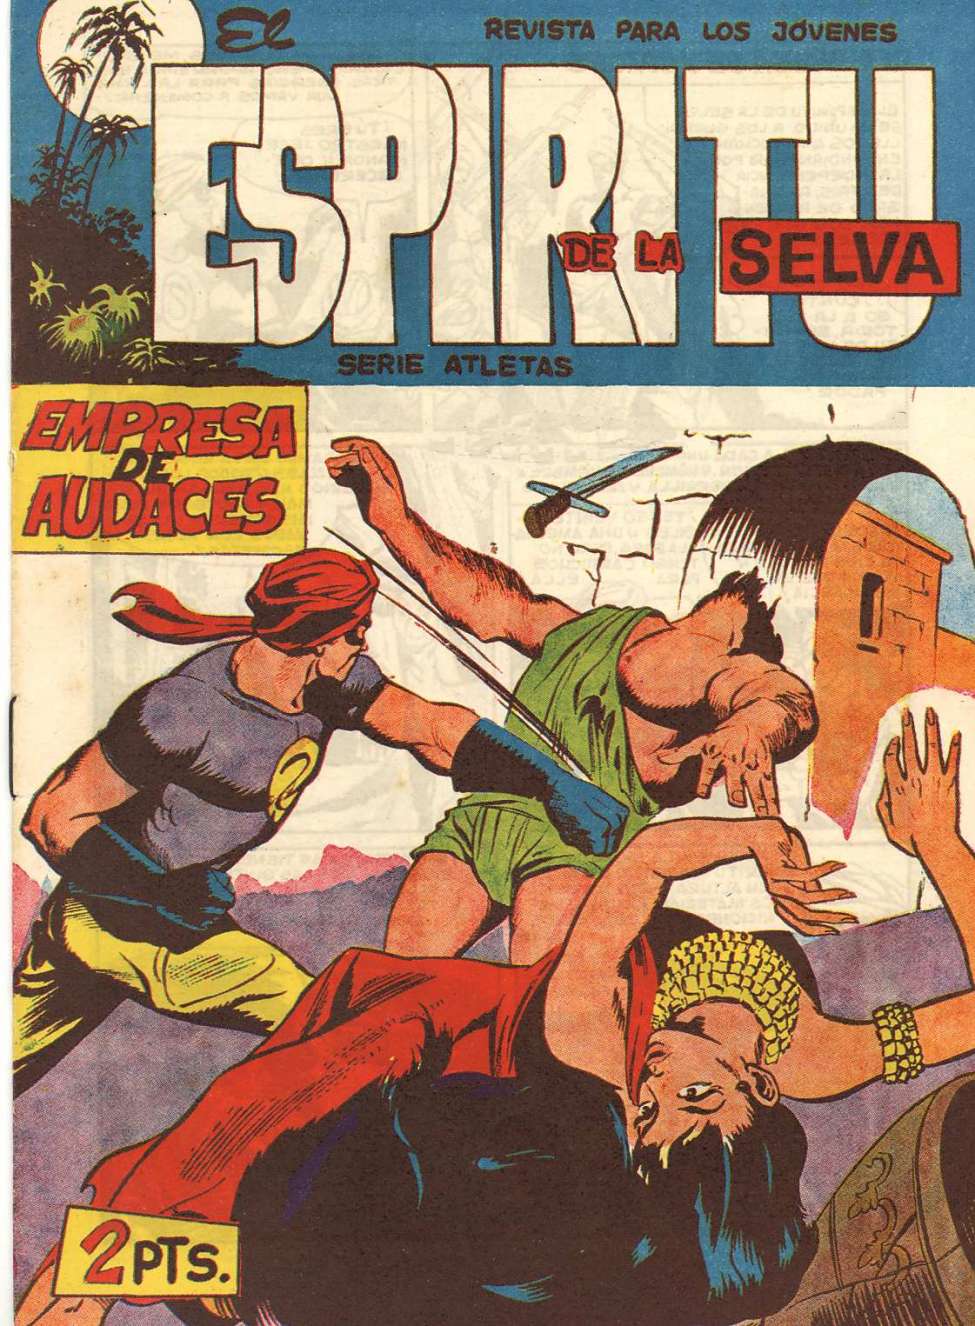 Comic Book Cover For El Espiritu De La Selva 63 - Empresa De Audaces